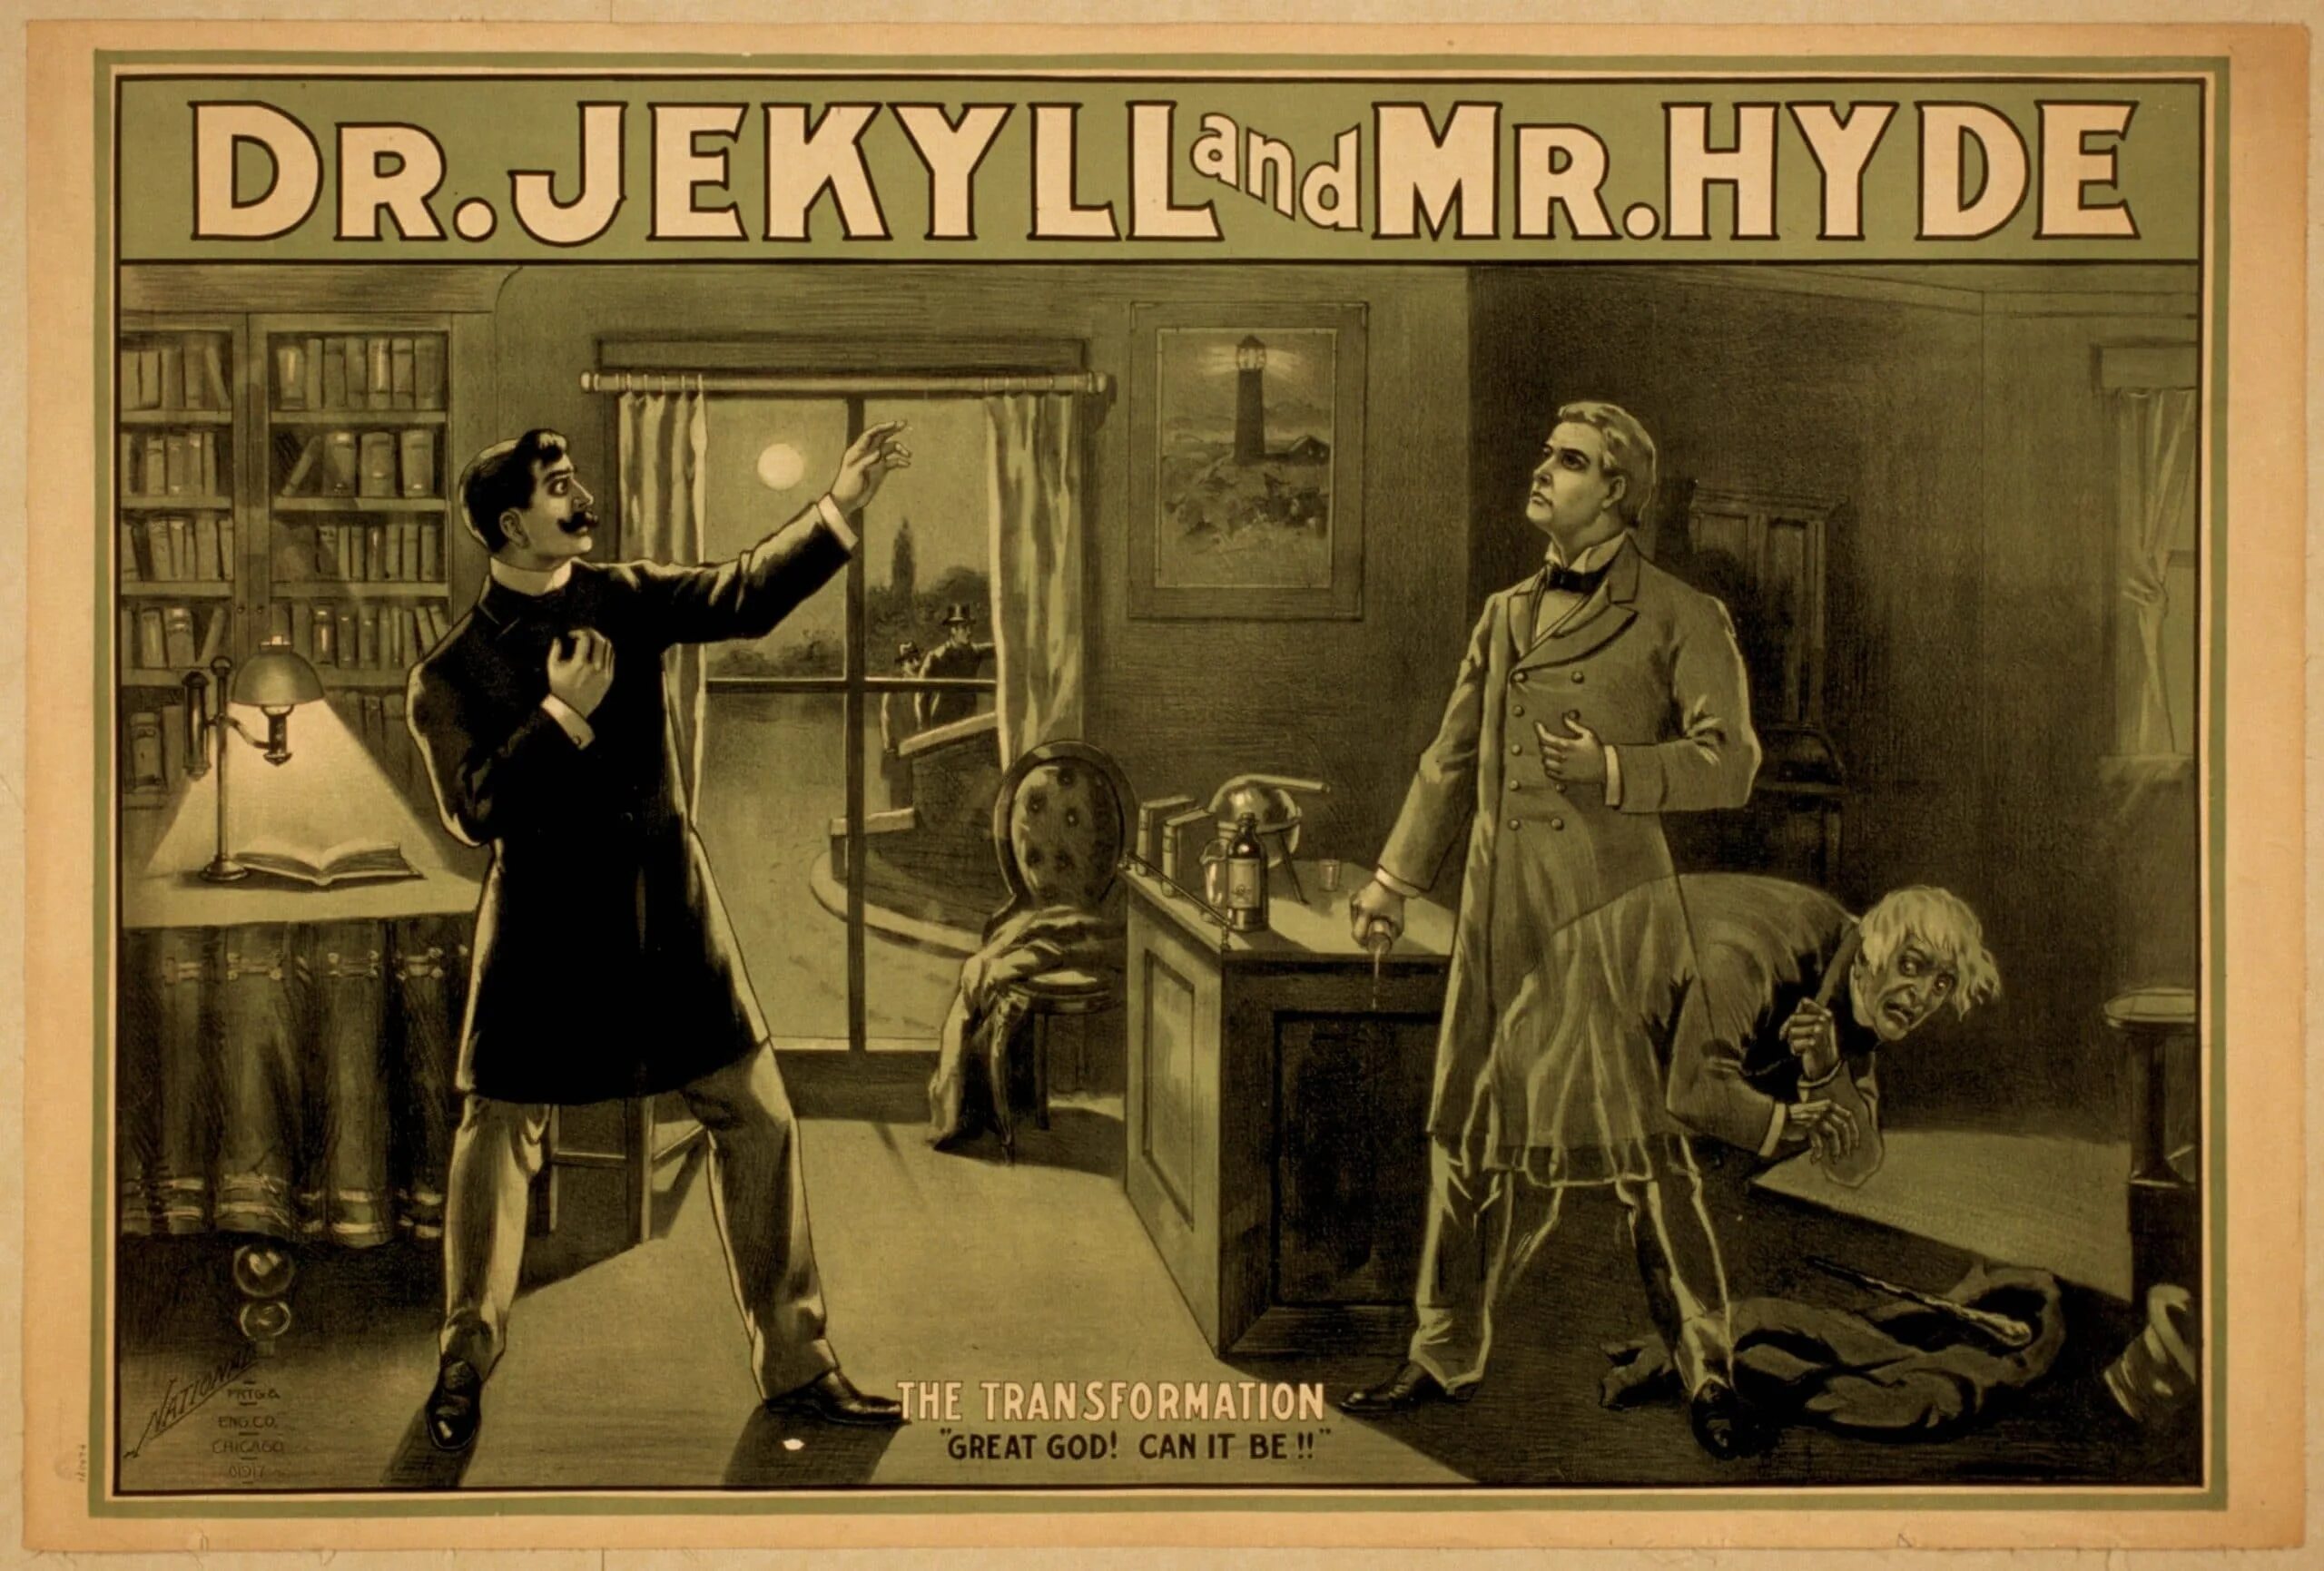 История мистера хайда. Мистер Хайд и доктор Джекил. Стивенсон доктор Джекил 1886.